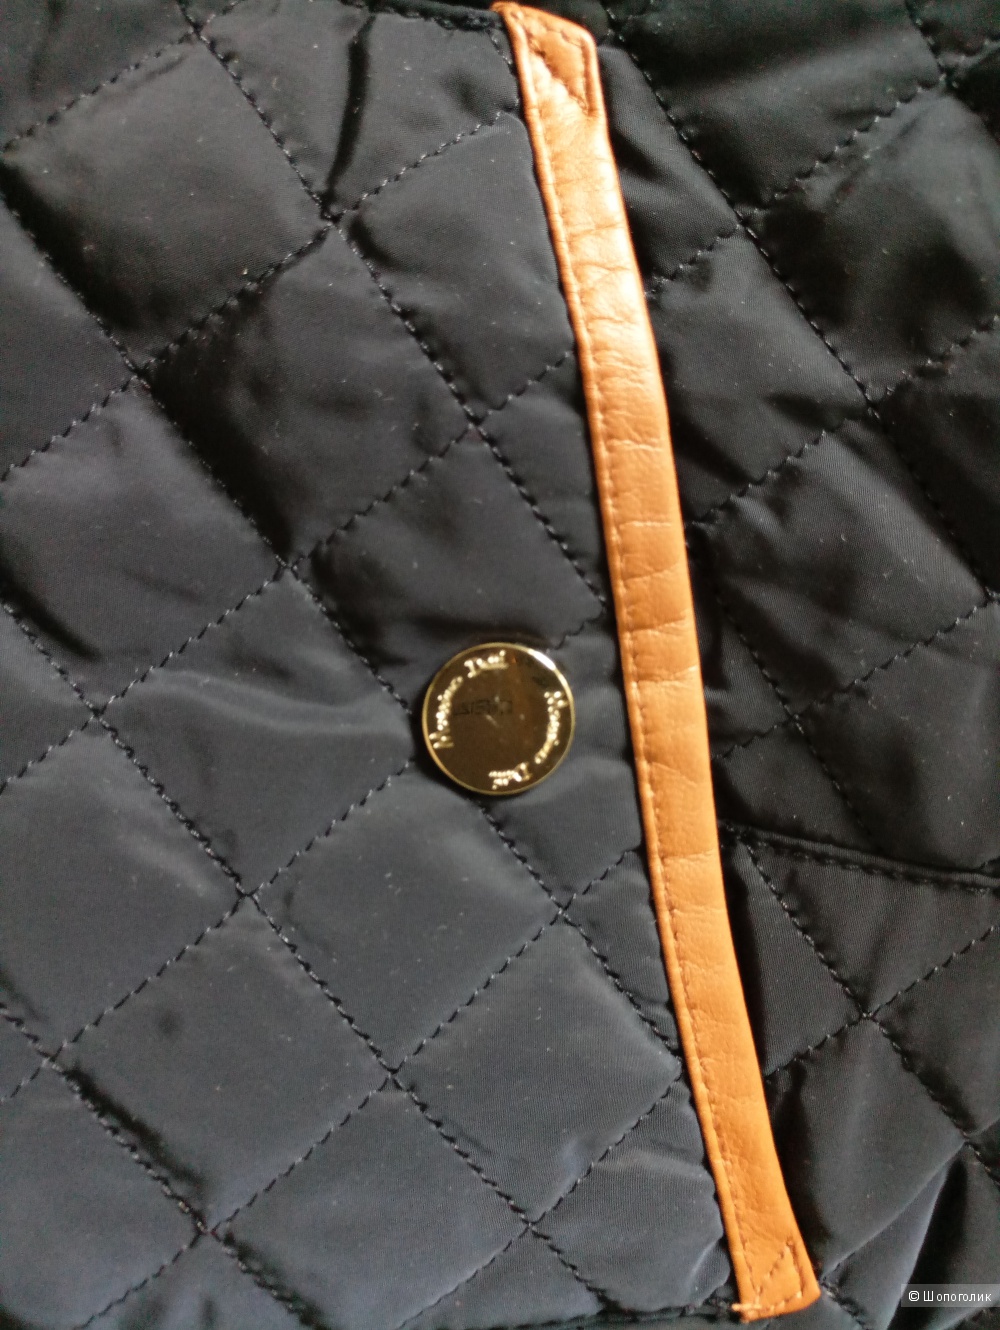 Куртка Massimo Dutti размер S 42-44